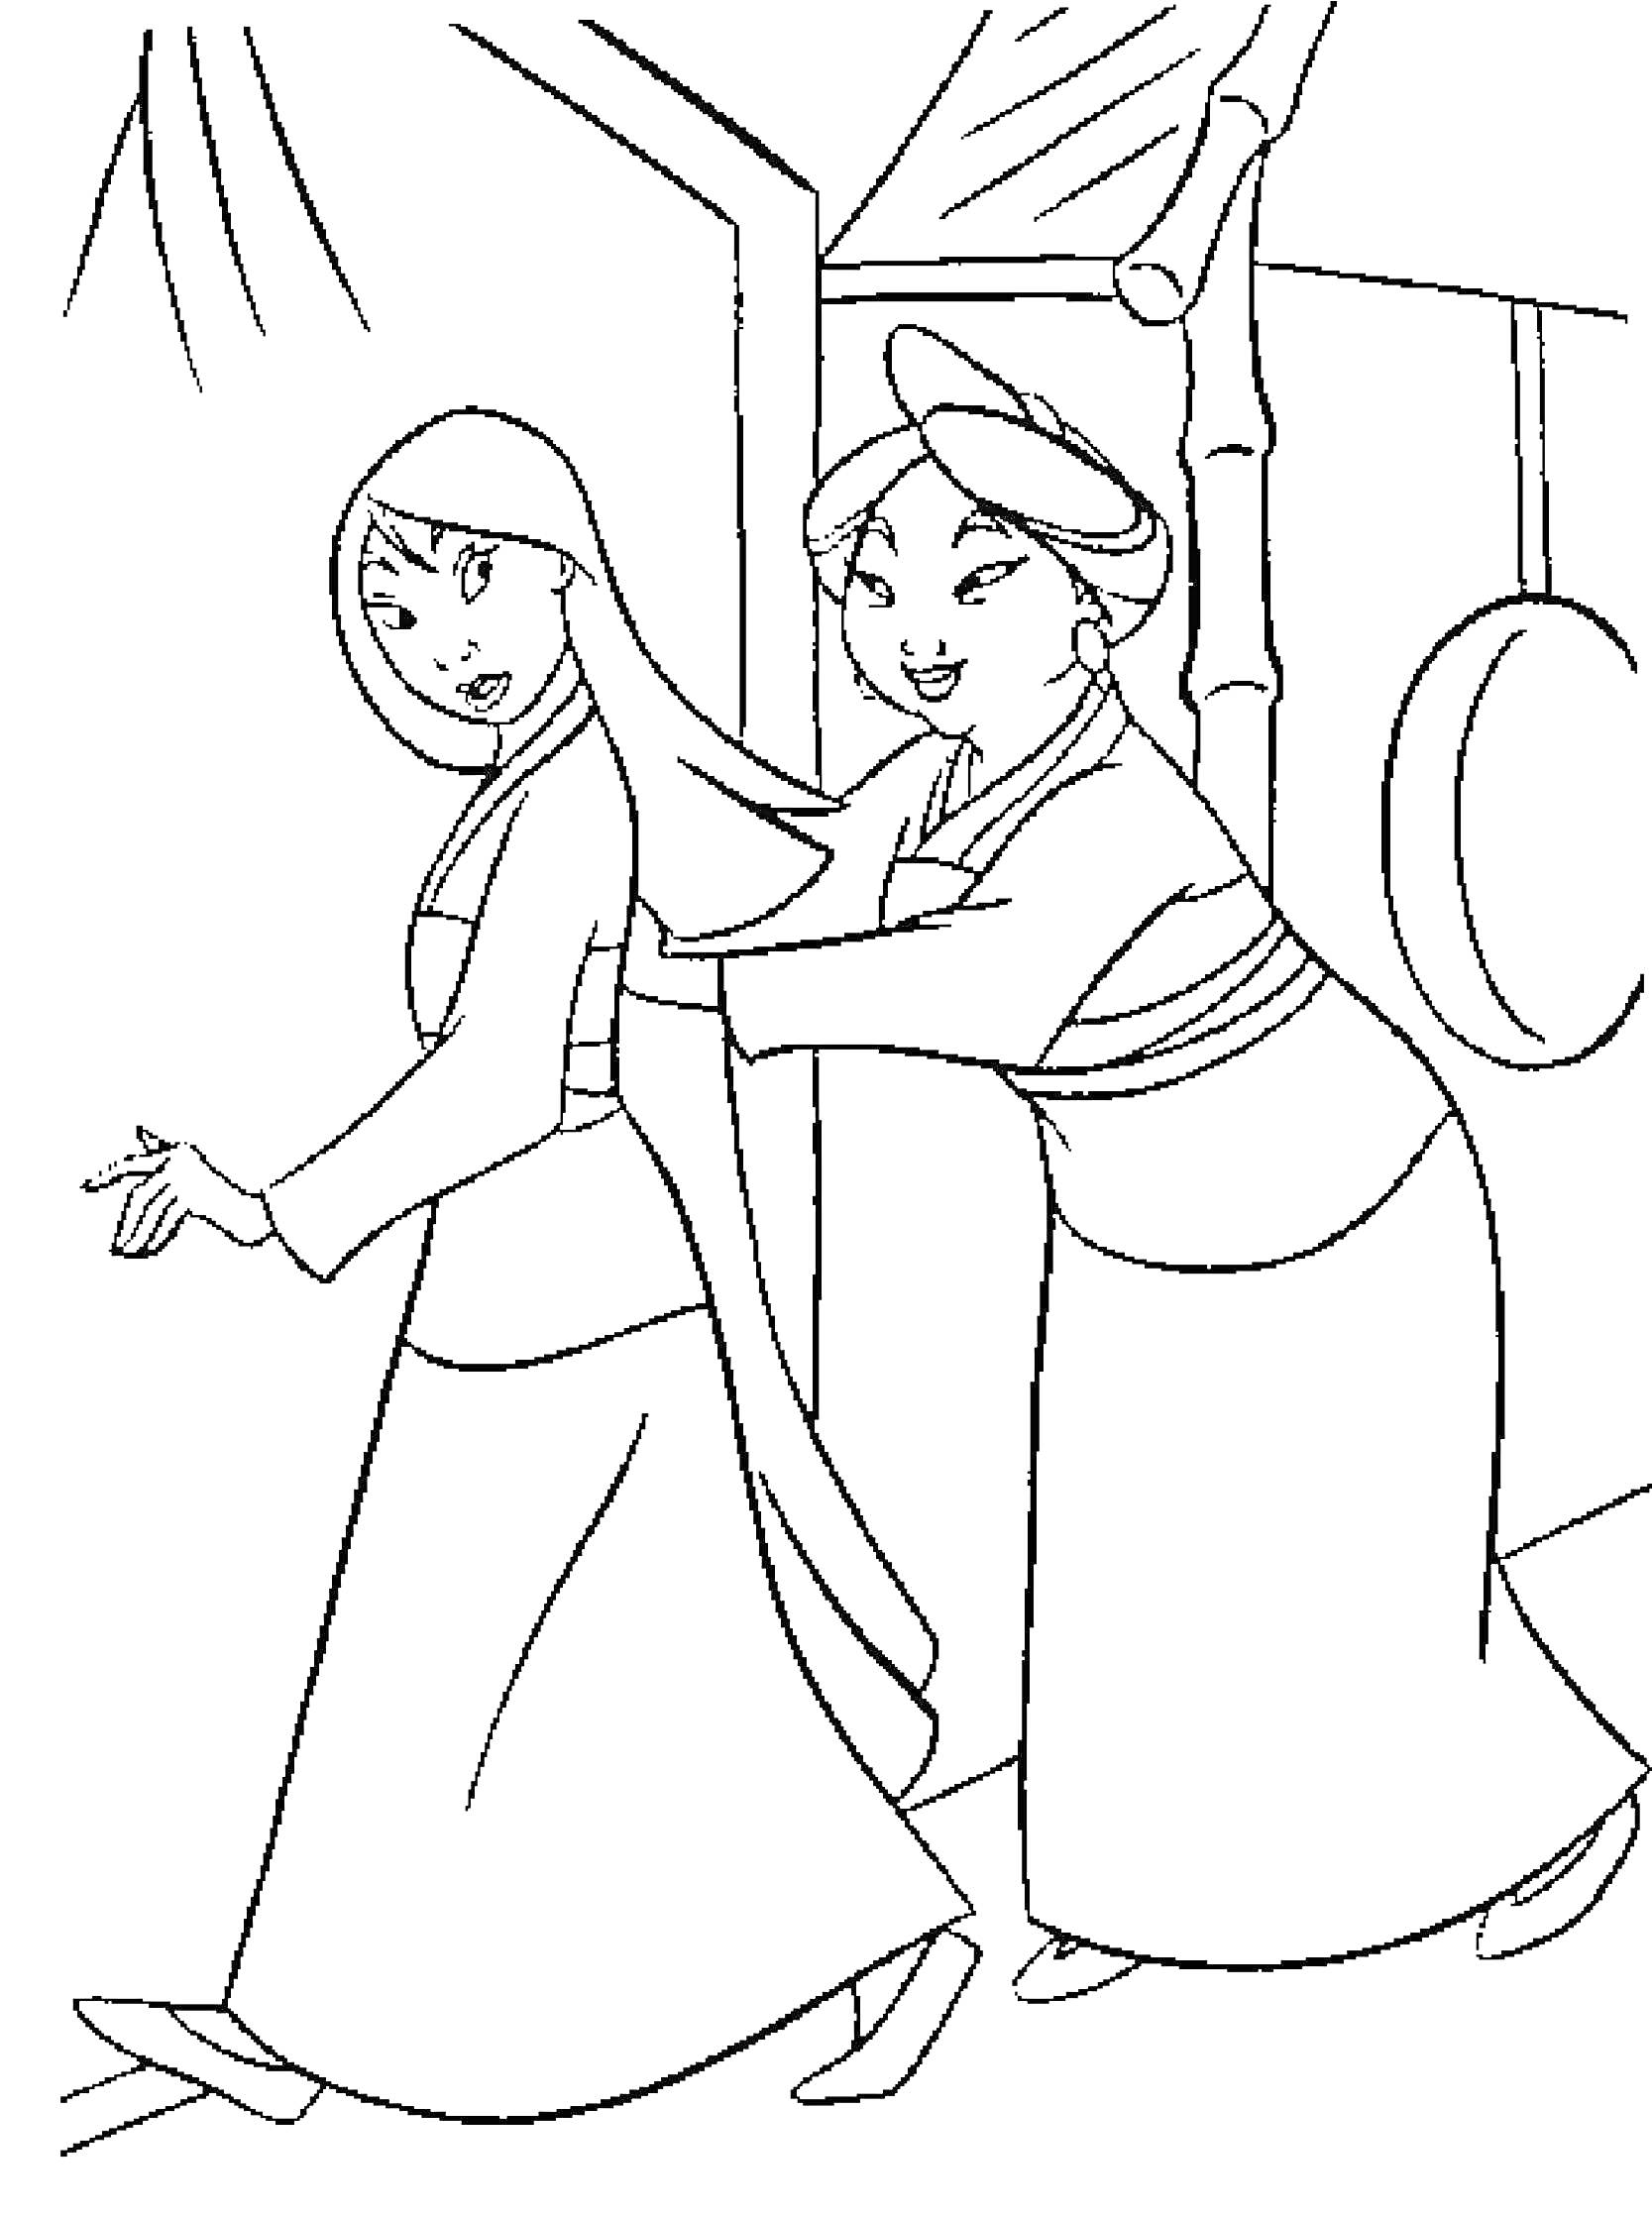 Две женщины в традиционной китайской одежде стоят рядом с зданием